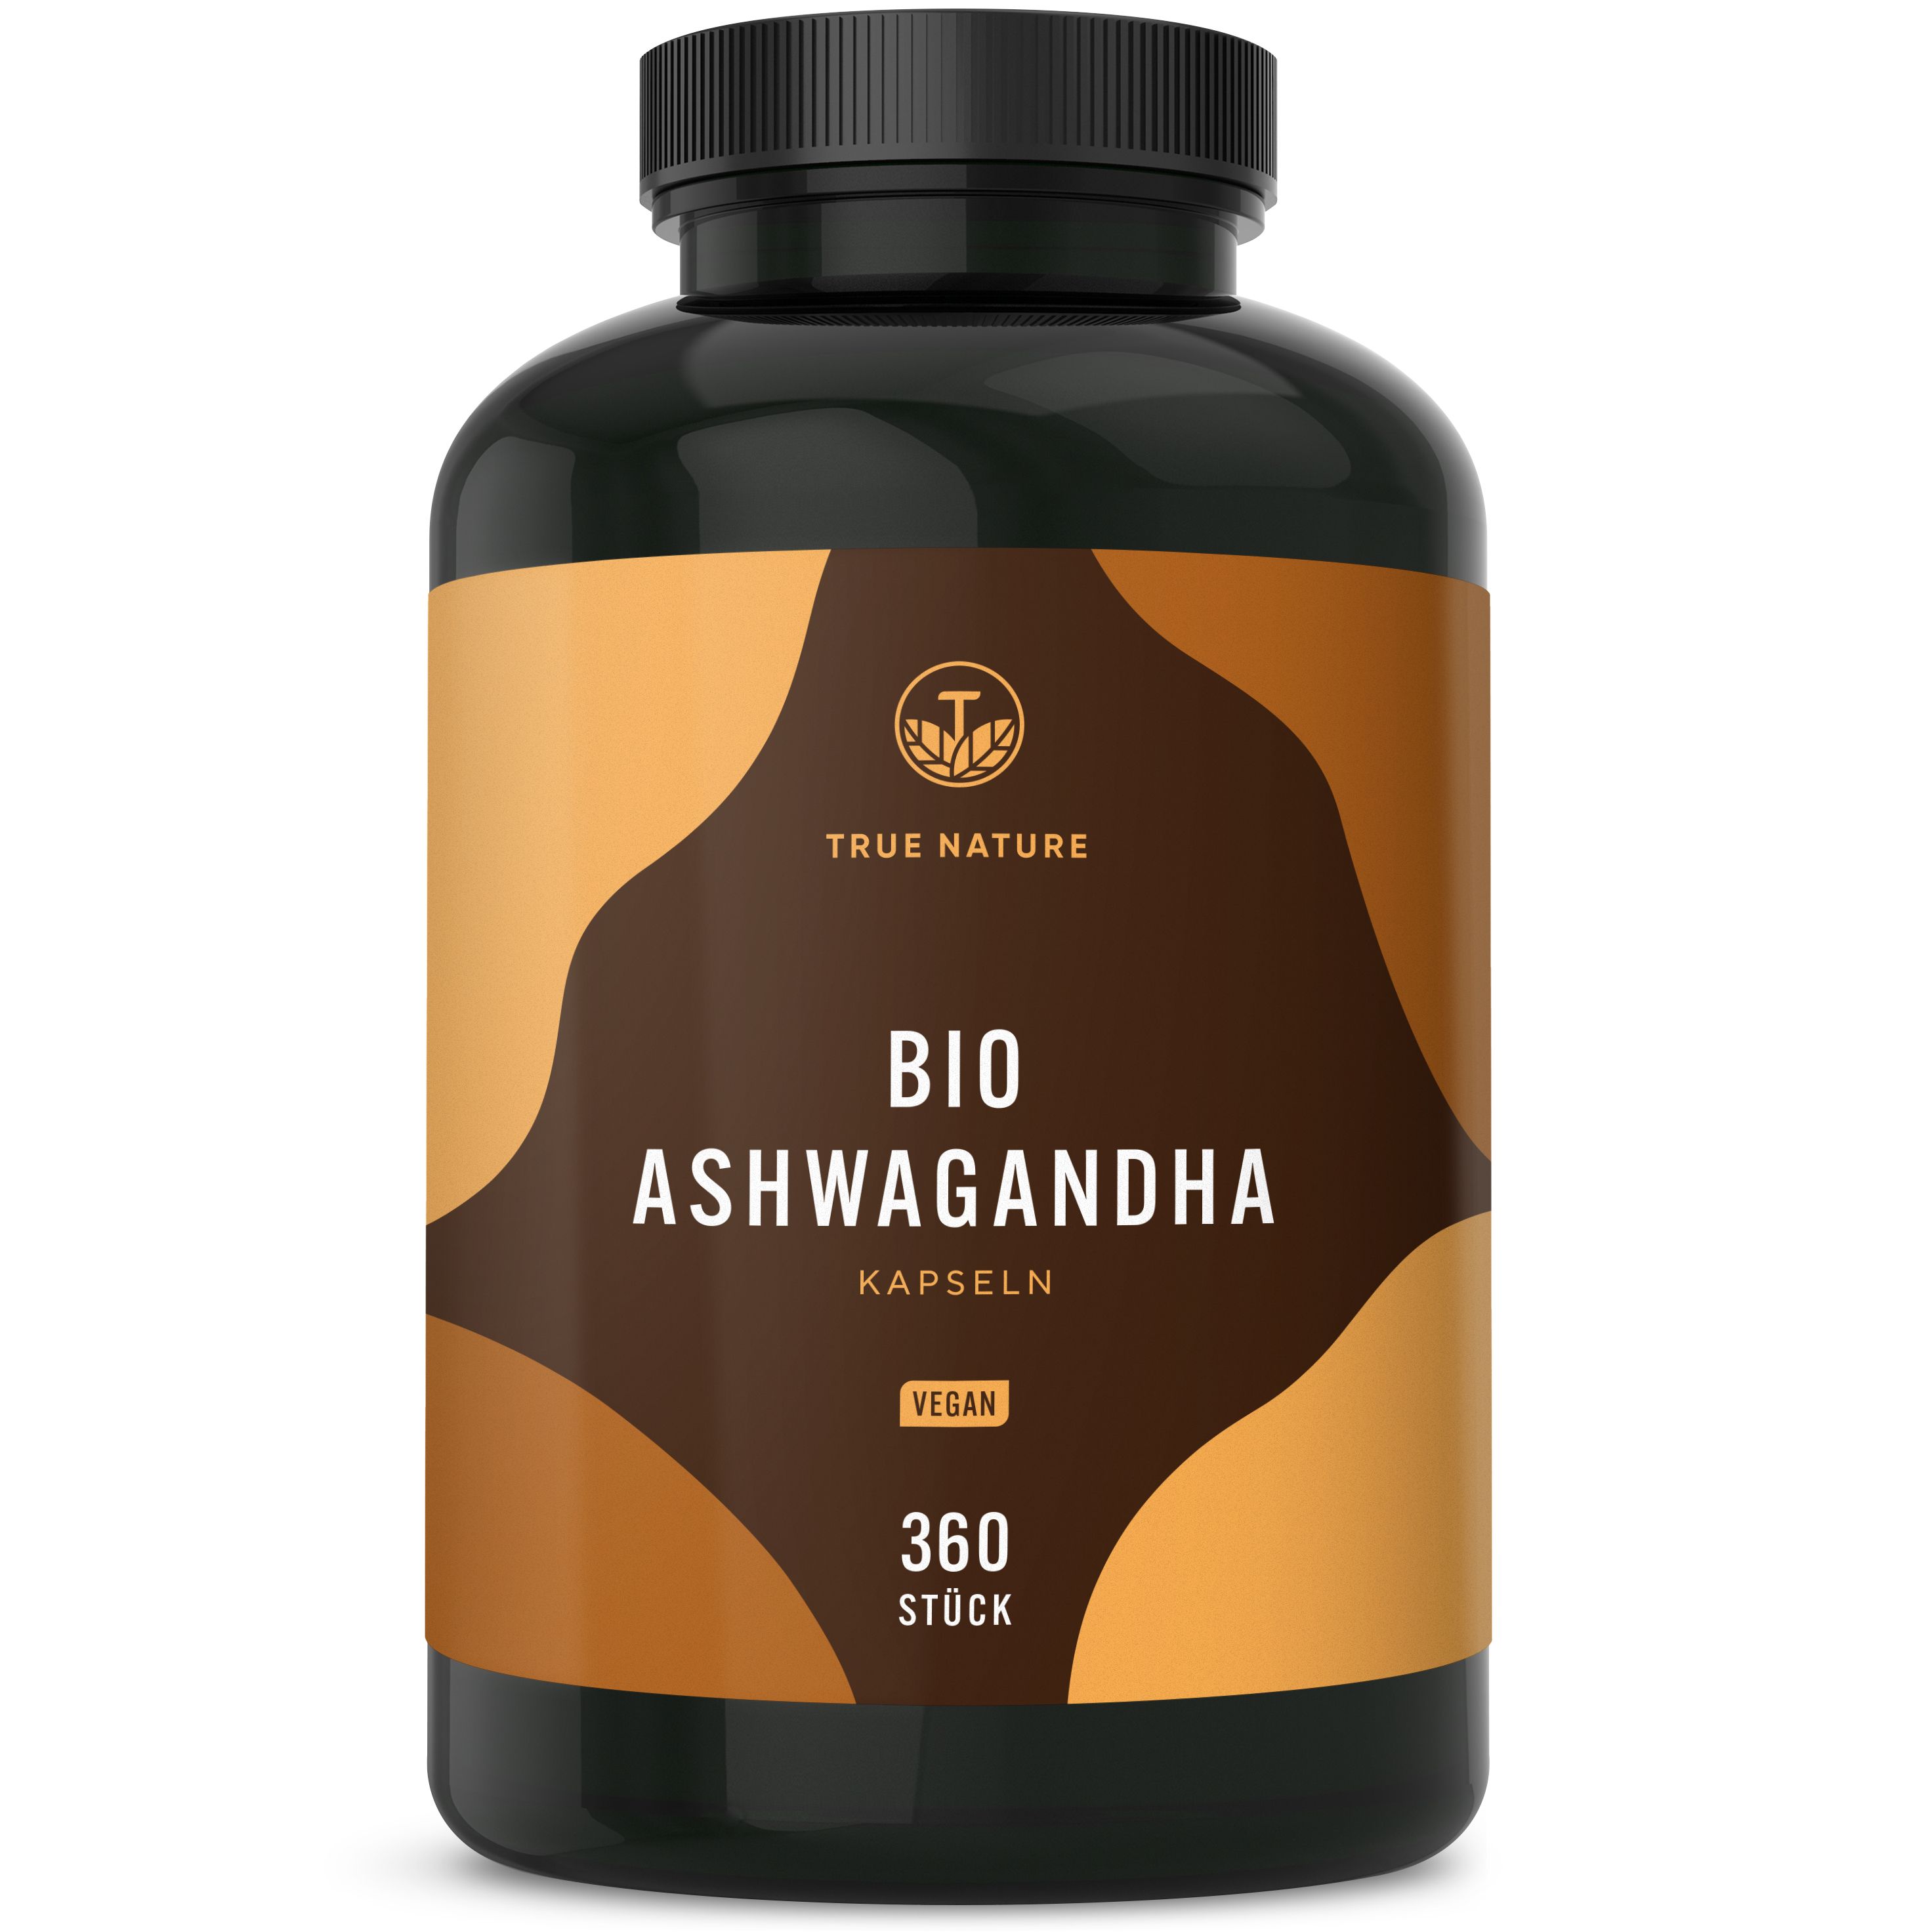 TRUE NATURE® Bio Ashwagandha Kapseln (650 mg) - Premium aus Indien